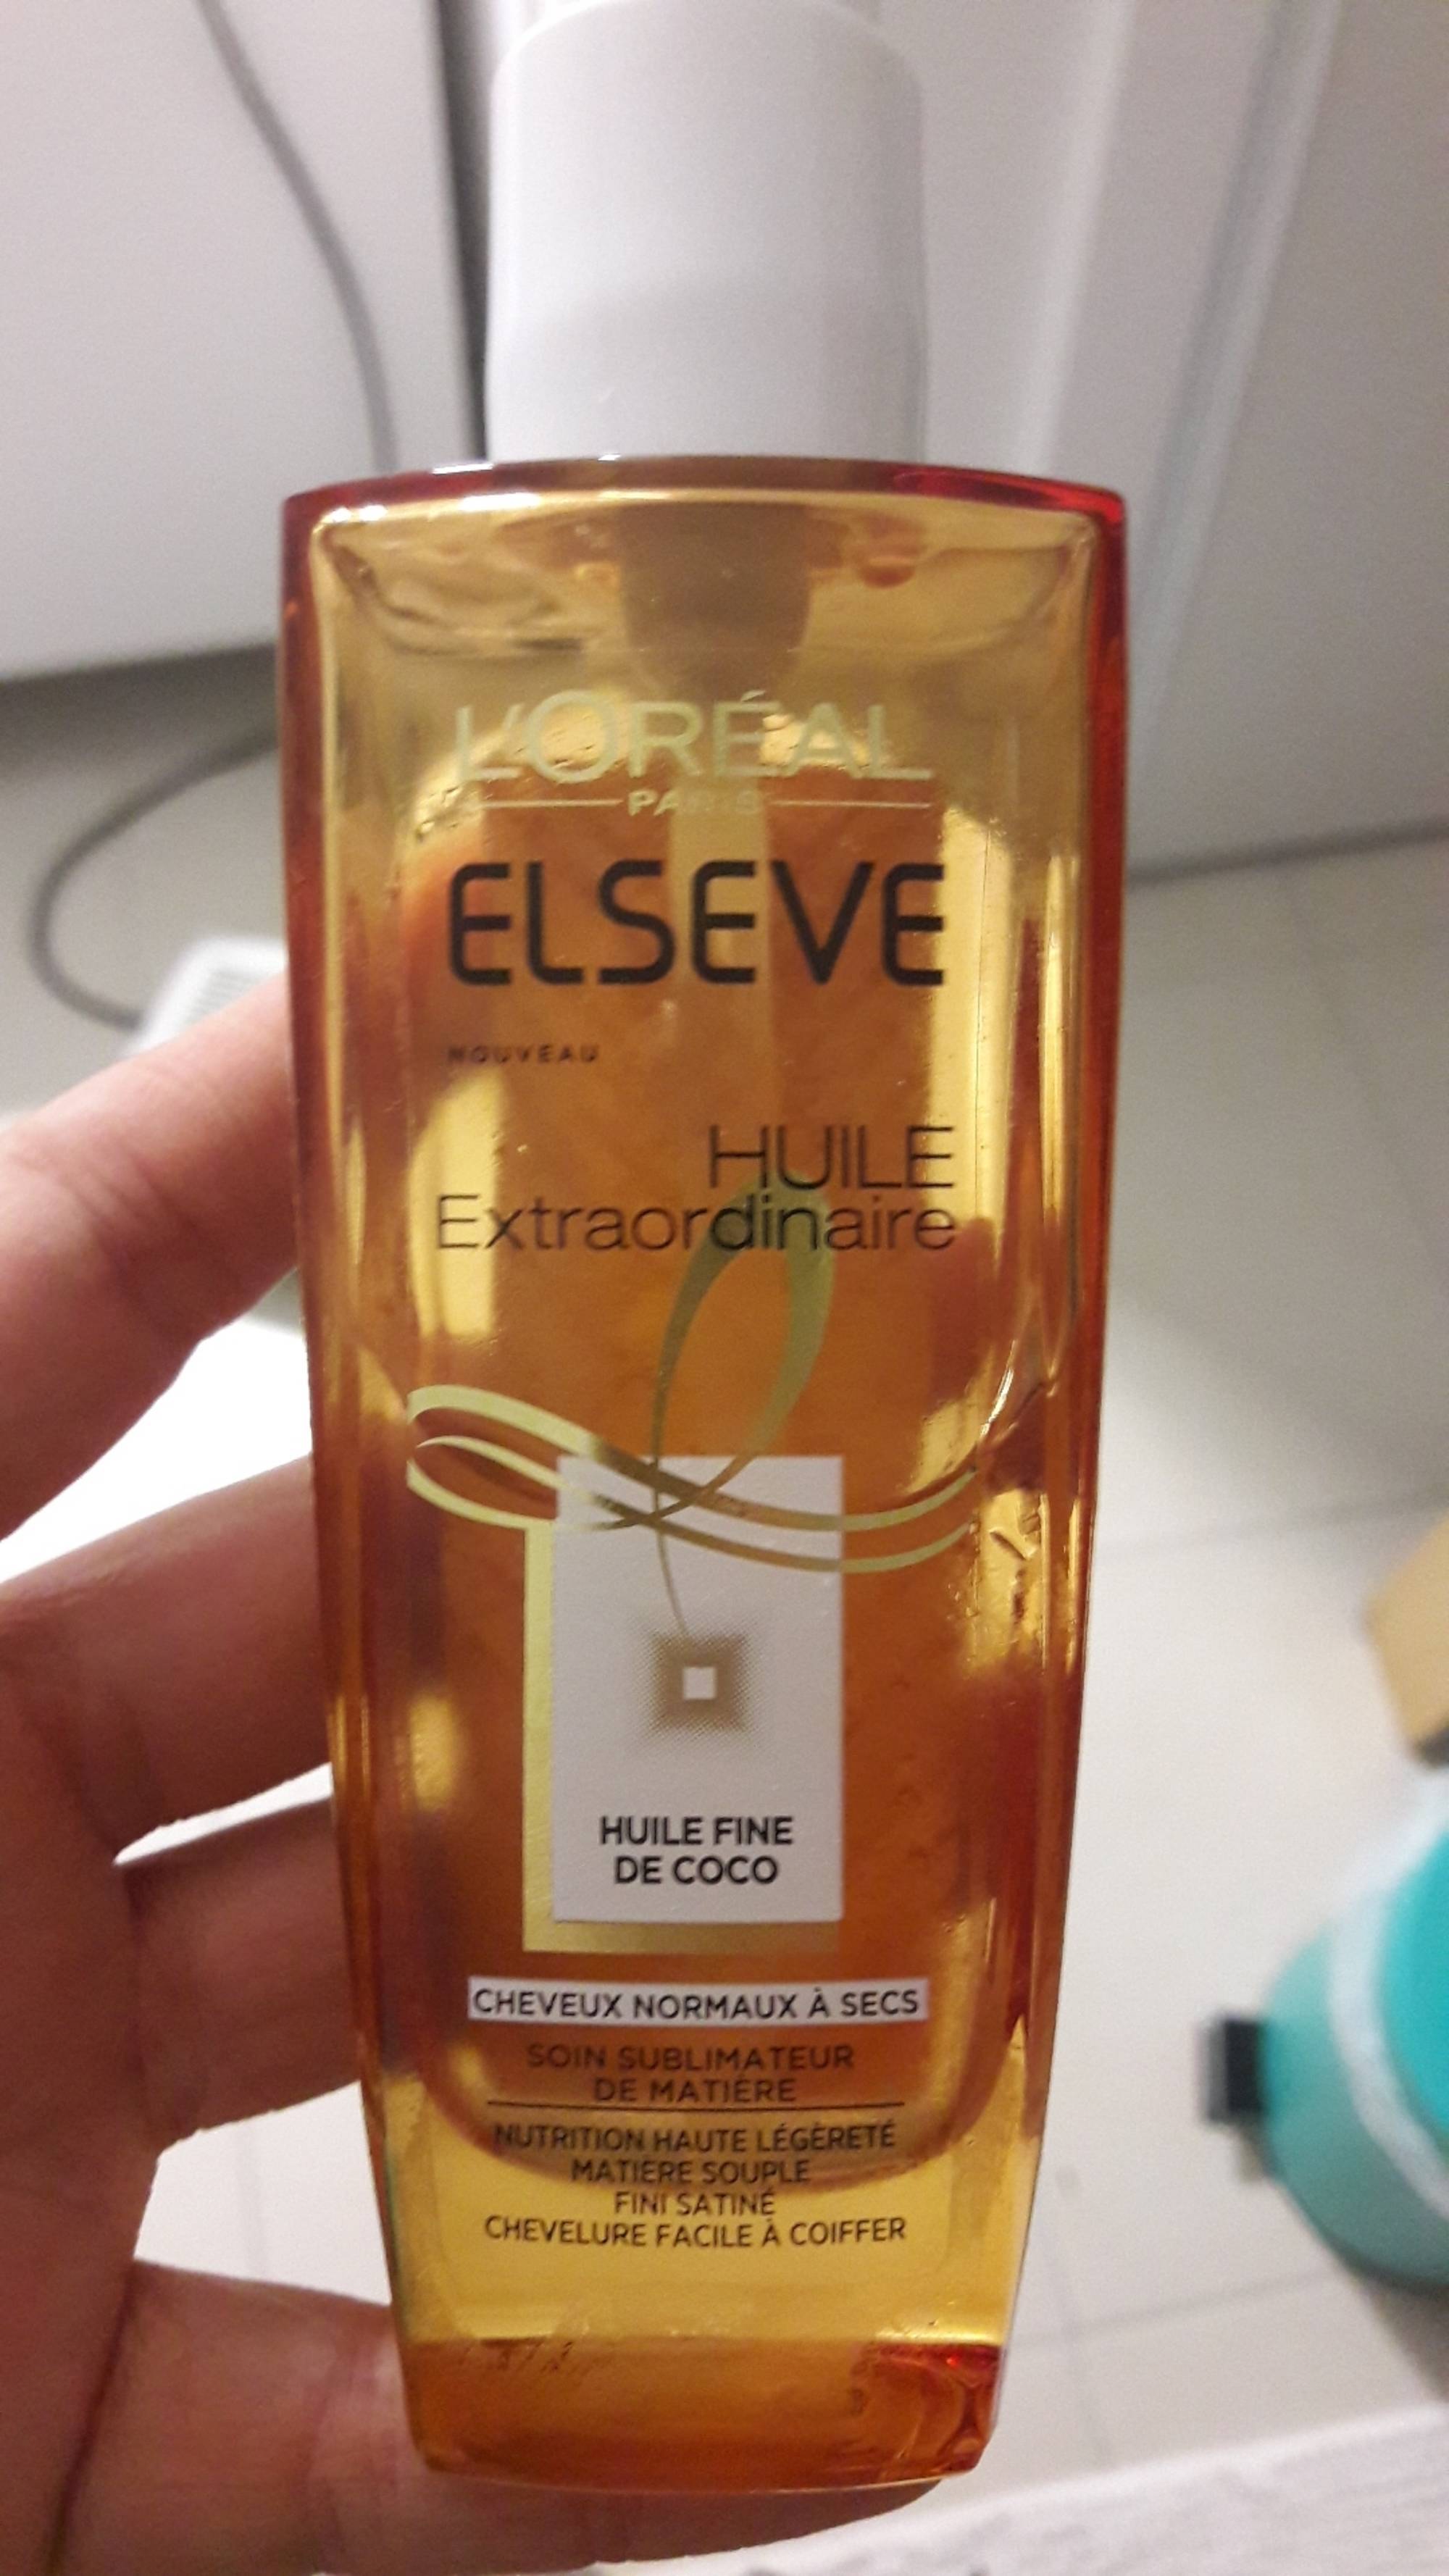 Huile Cheveux Elvive Extraordinary Coconut - 100 ml: L'Oréal Paris